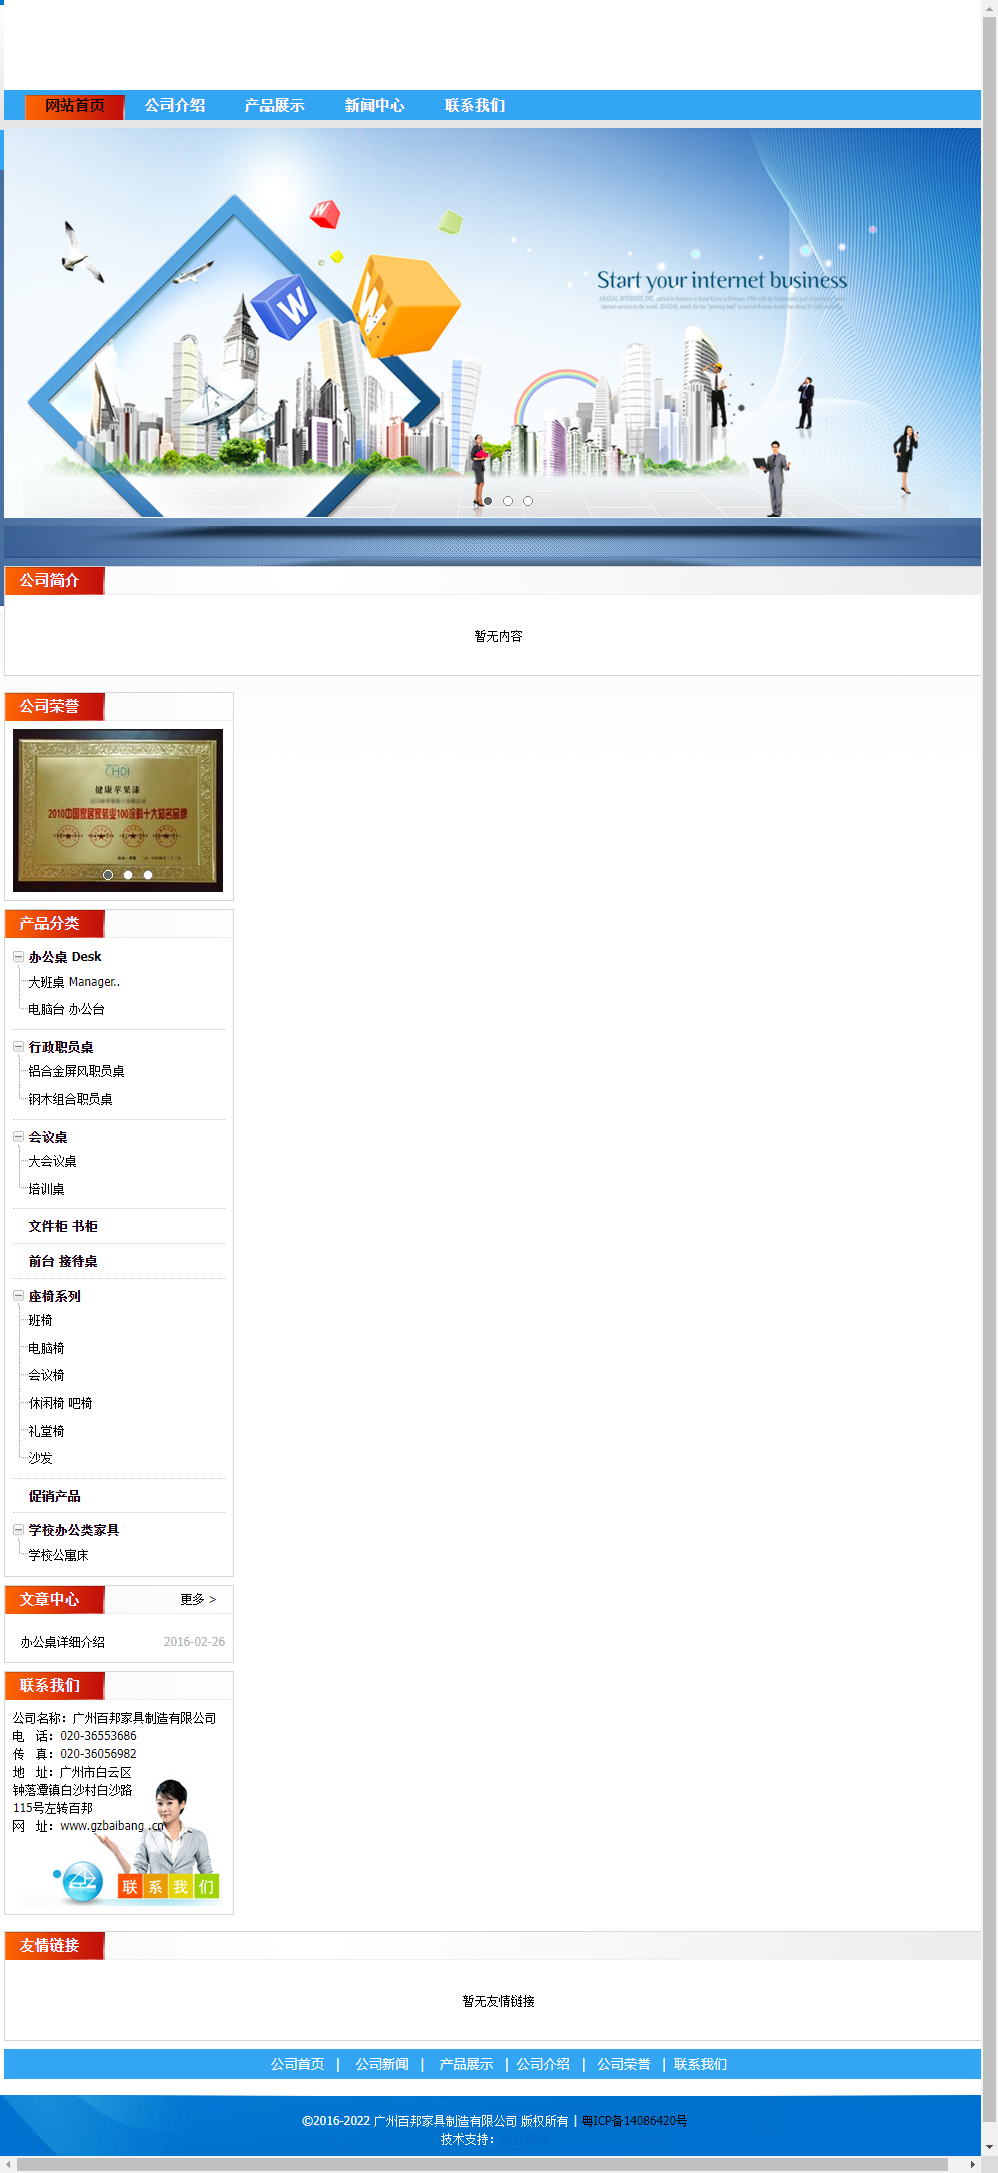 广州百邦家具制造有限公司网站案例